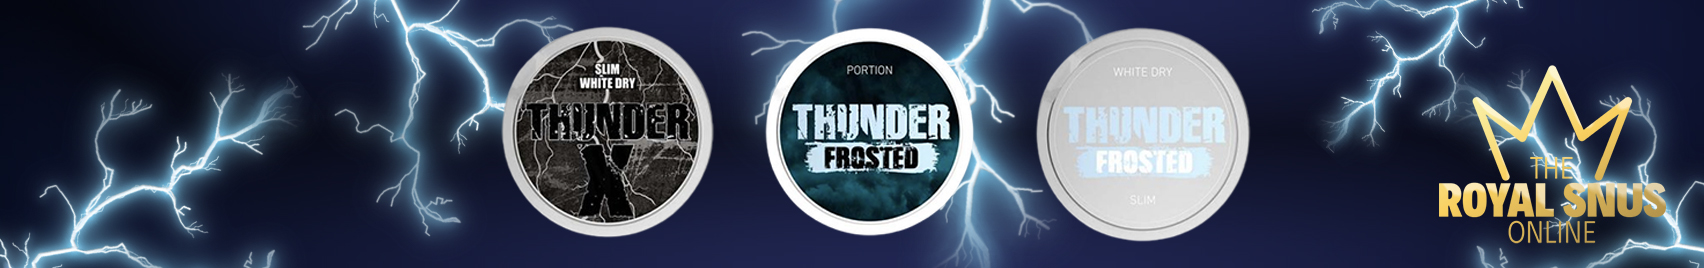 Buy Thunder Snus online at The Royal Snus Online